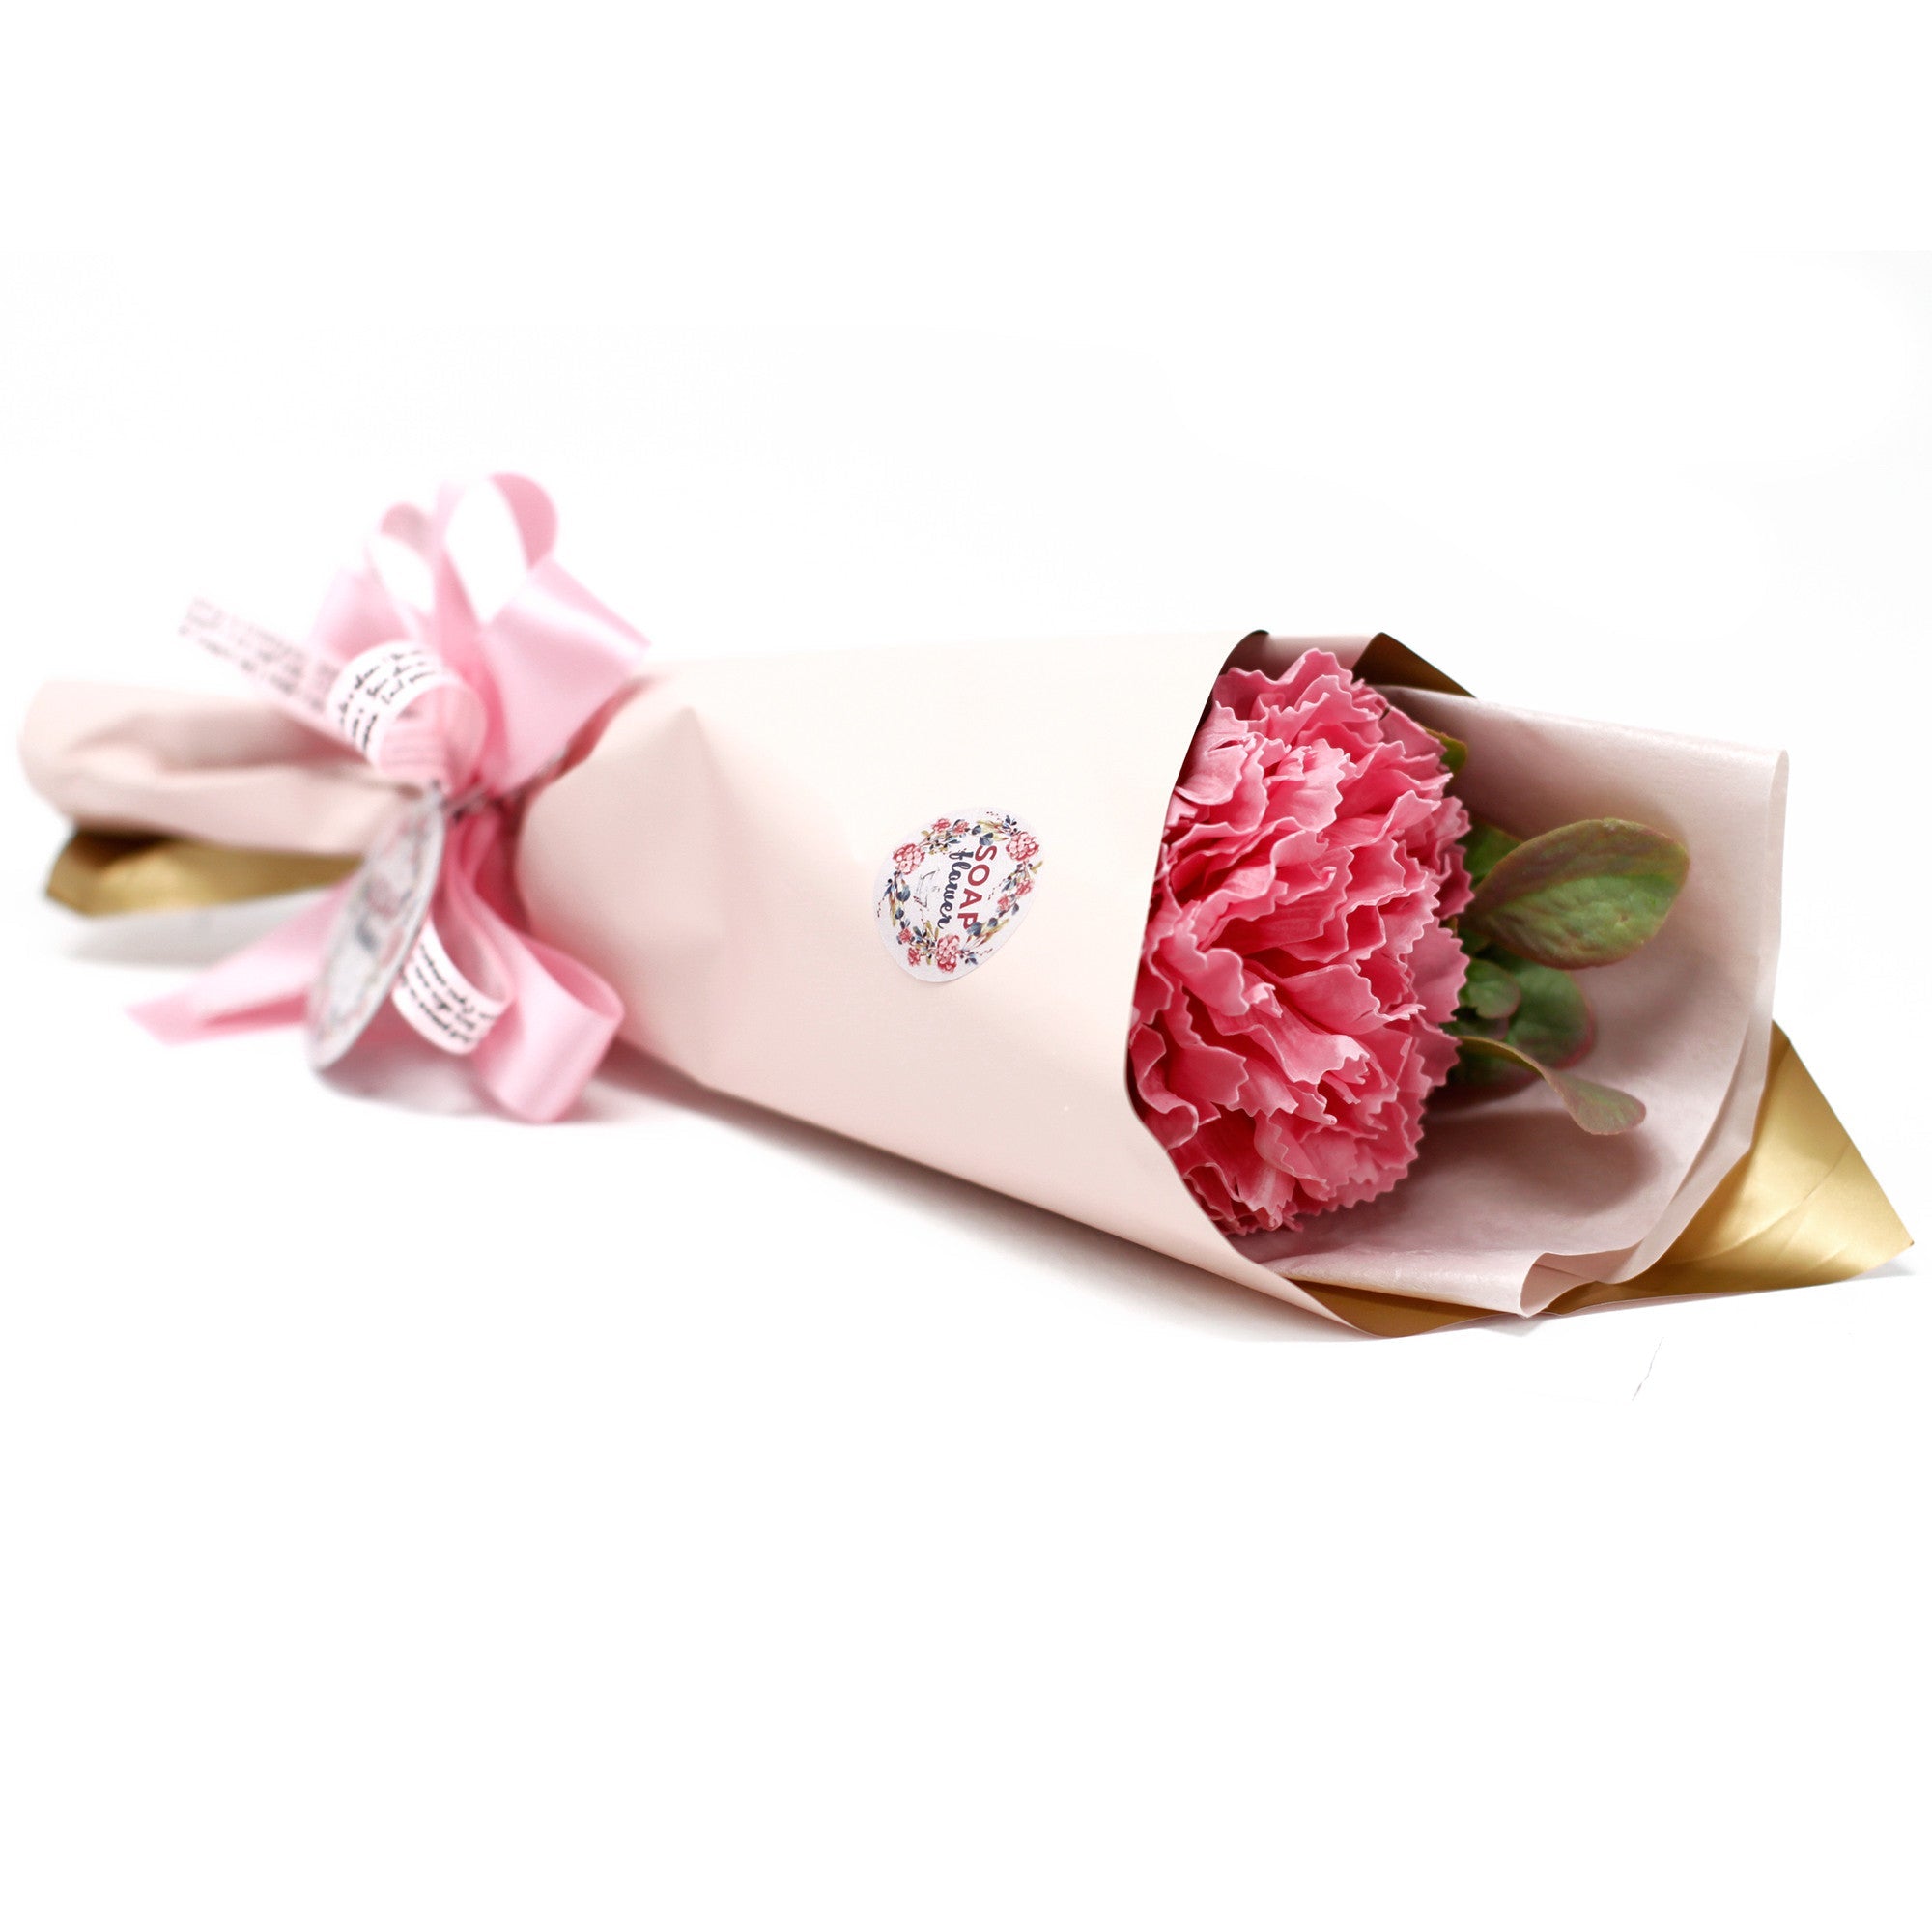 Pink Carnation Bouquet - Soap Flower - Ultrabee